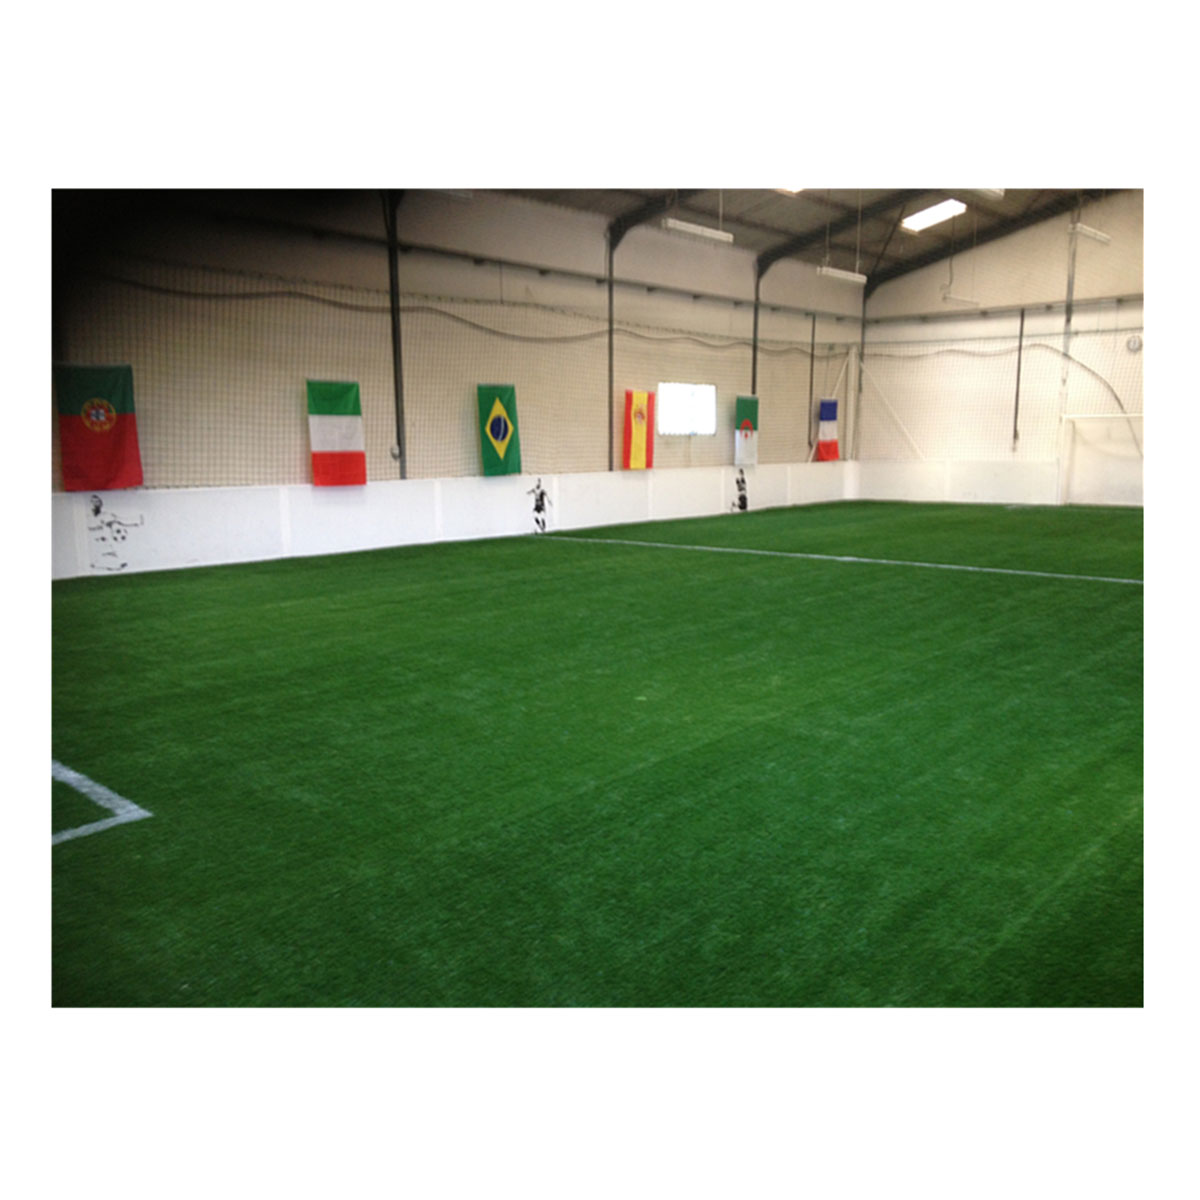 Super staark net infill kënschtlech Gras fir Fussball Mini Fussball Futsal Feld